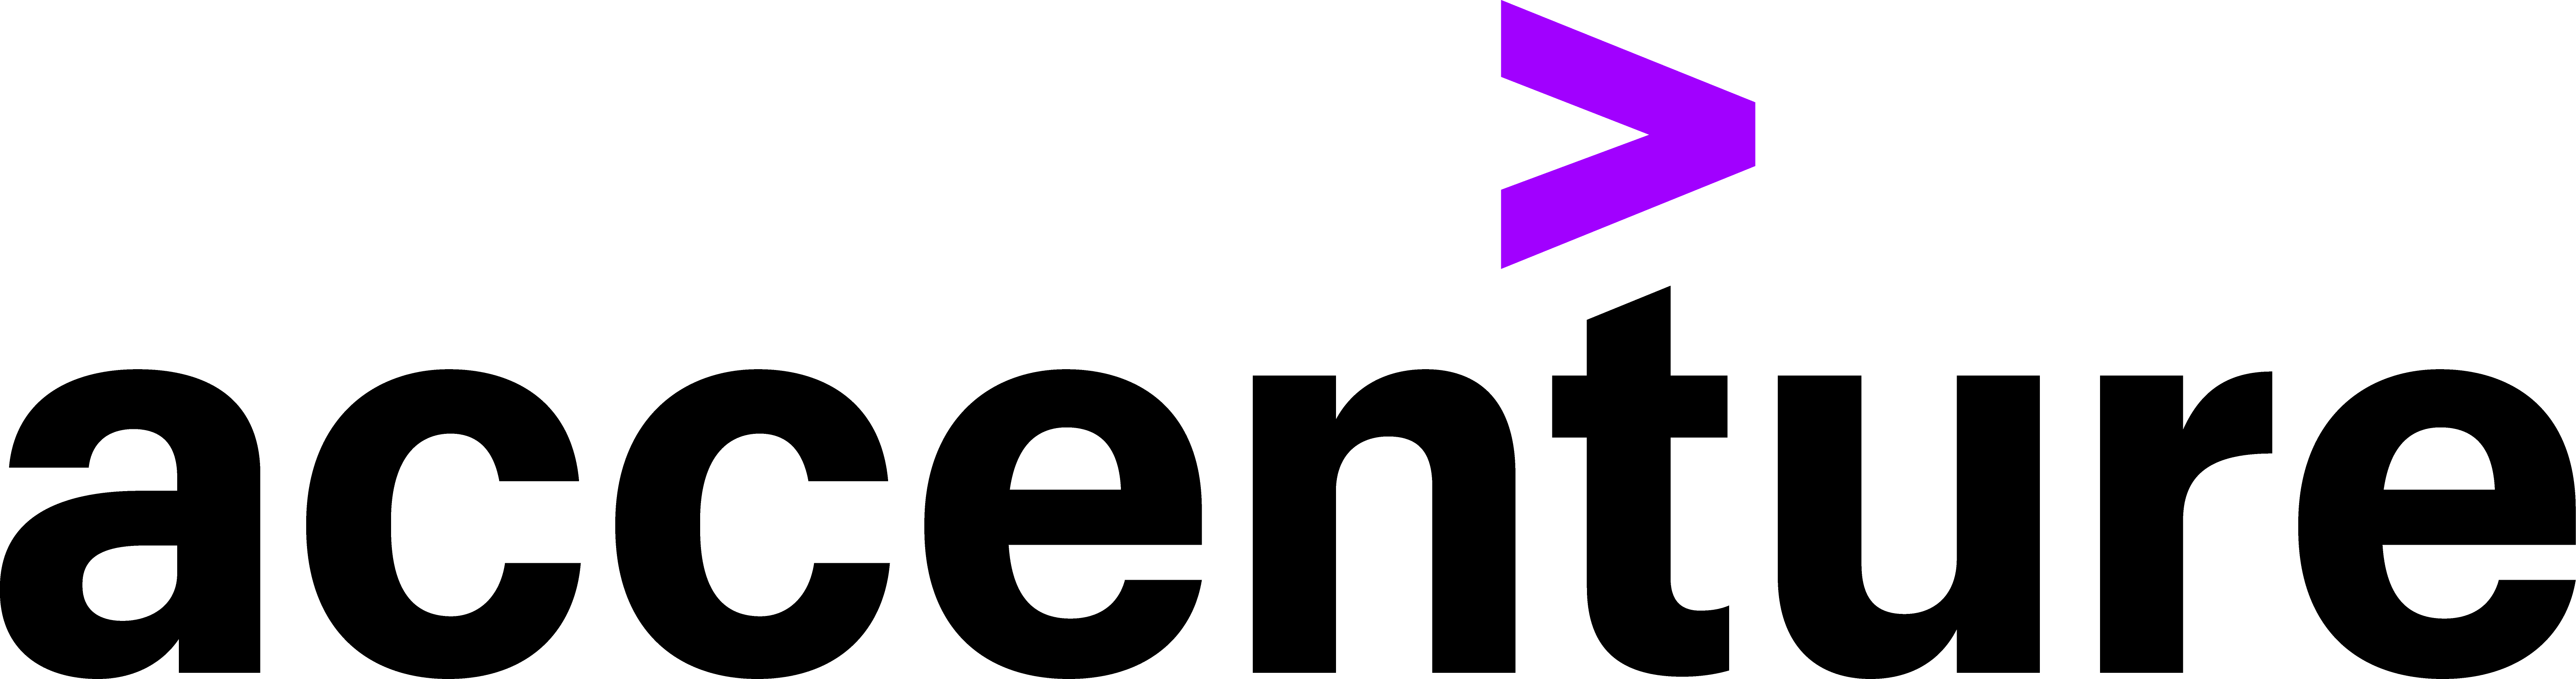 Logo firmy Accenture.